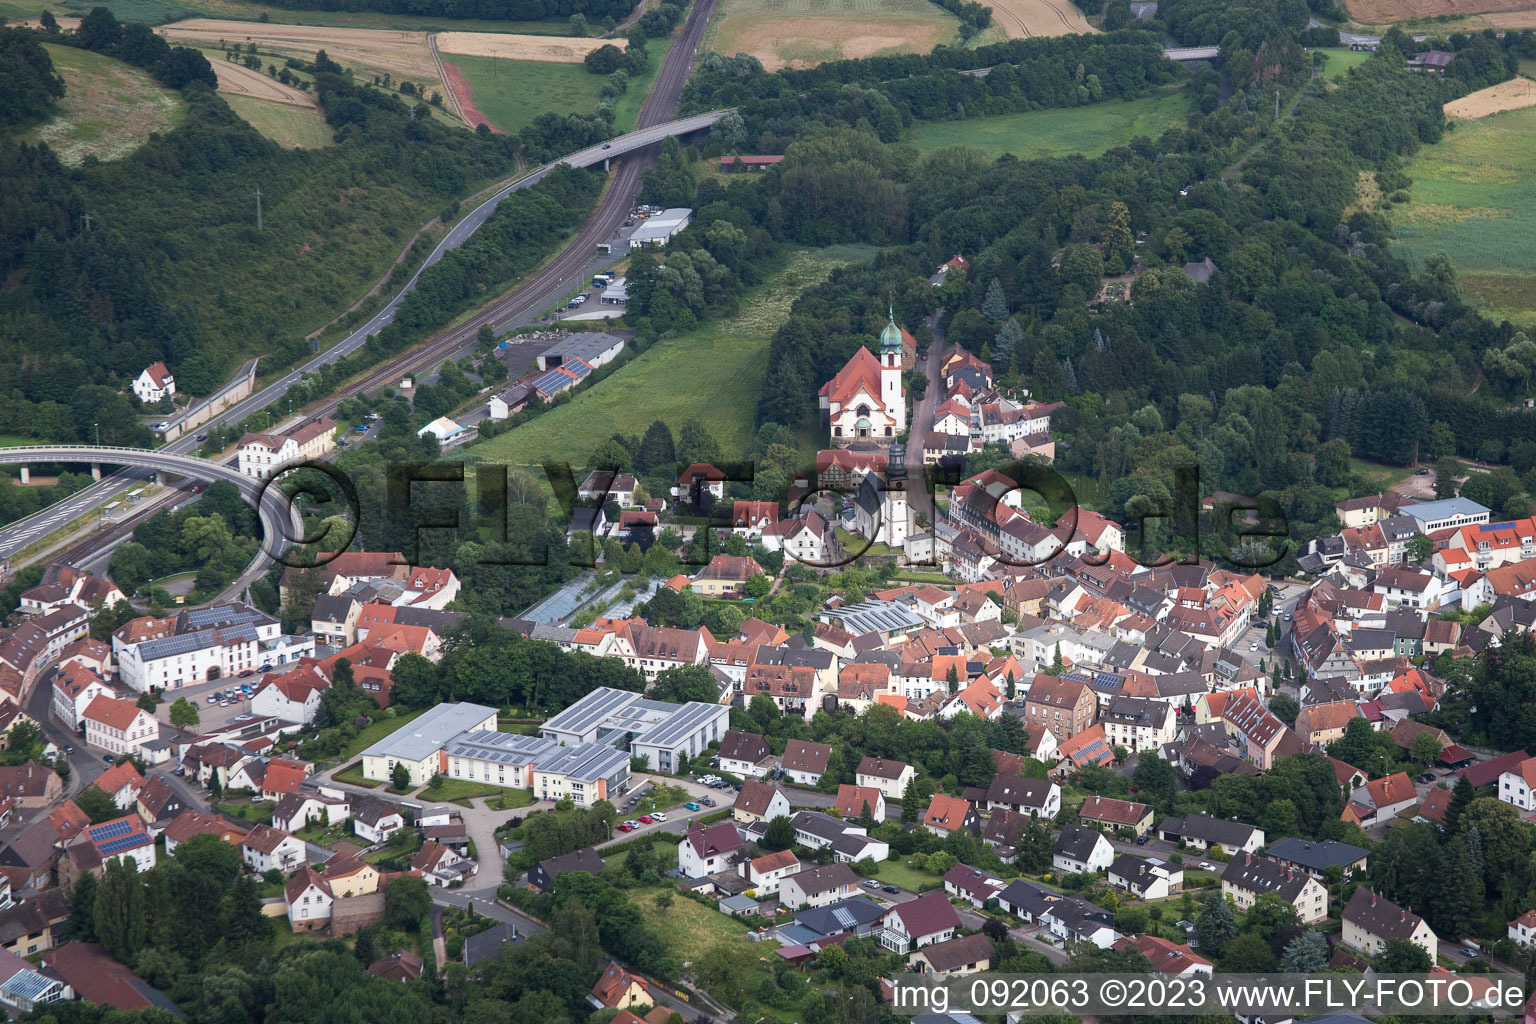 Winnweiler in the state Rhineland-Palatinate, Germany